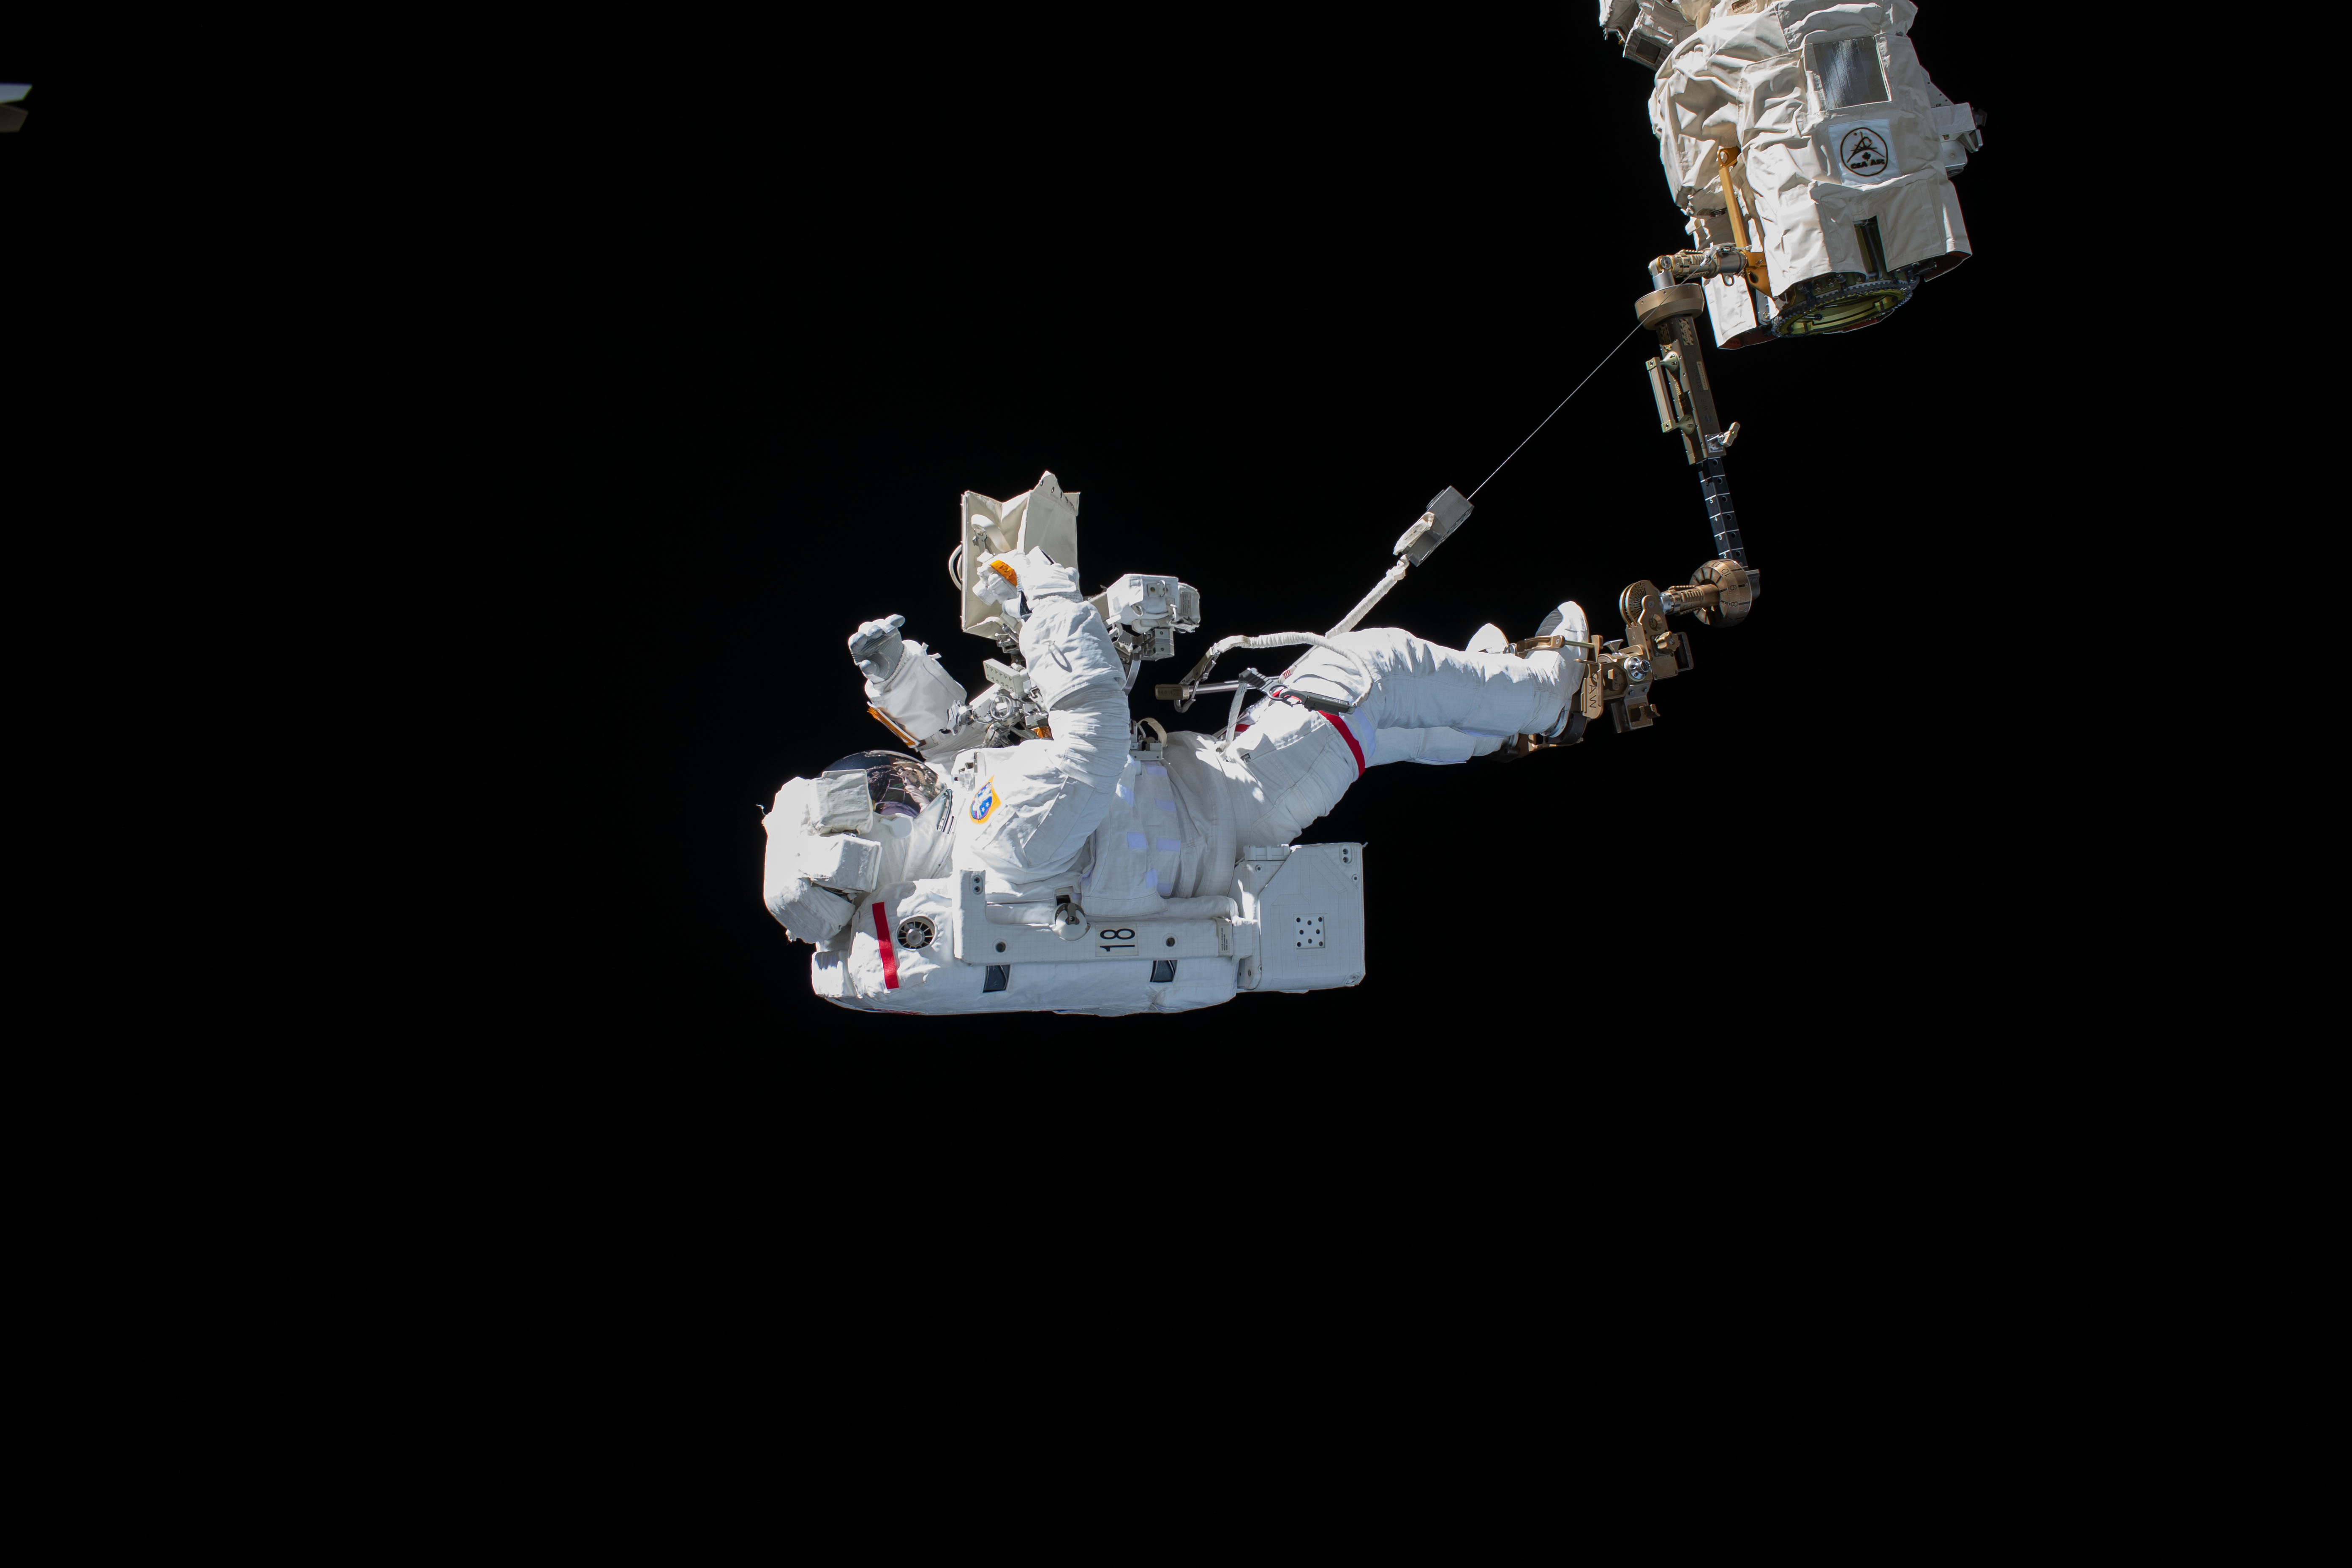 Luca Parmitano ESA NASA Canadarm2 Astronaut Spacesuit Space 5568x3712